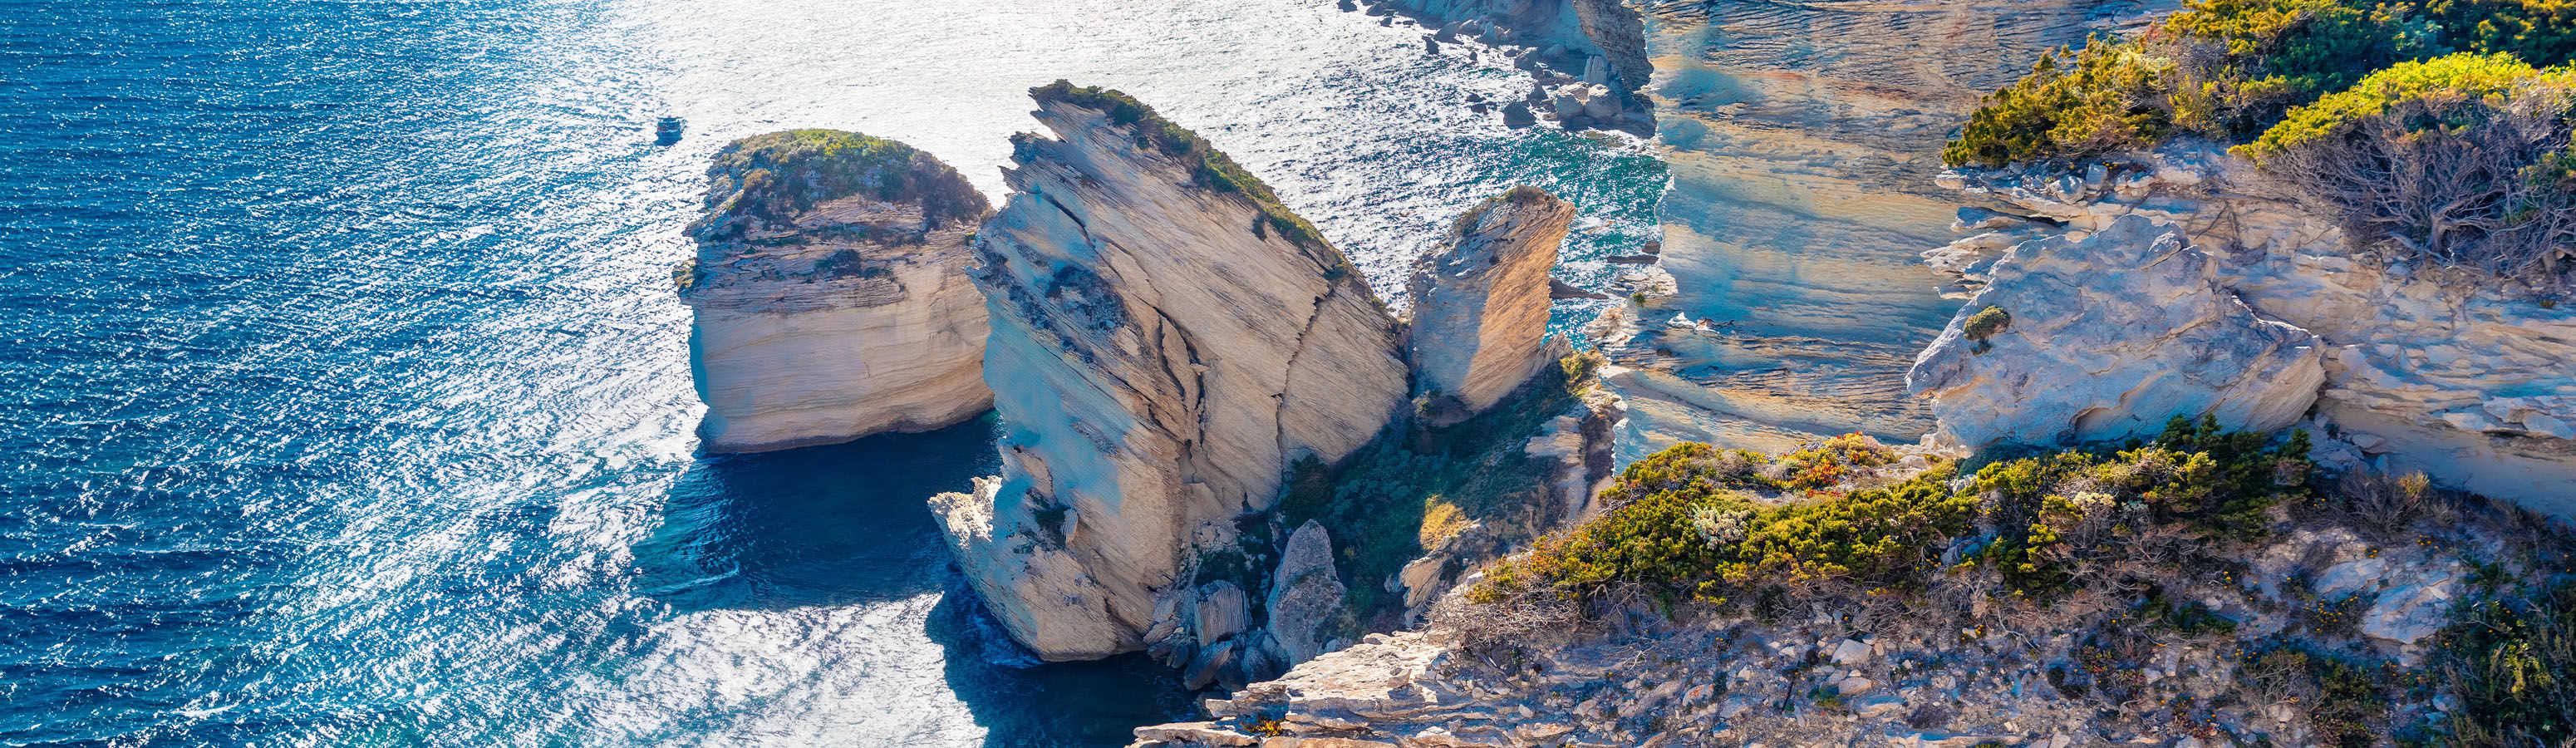 Corsica is a tourist paradise